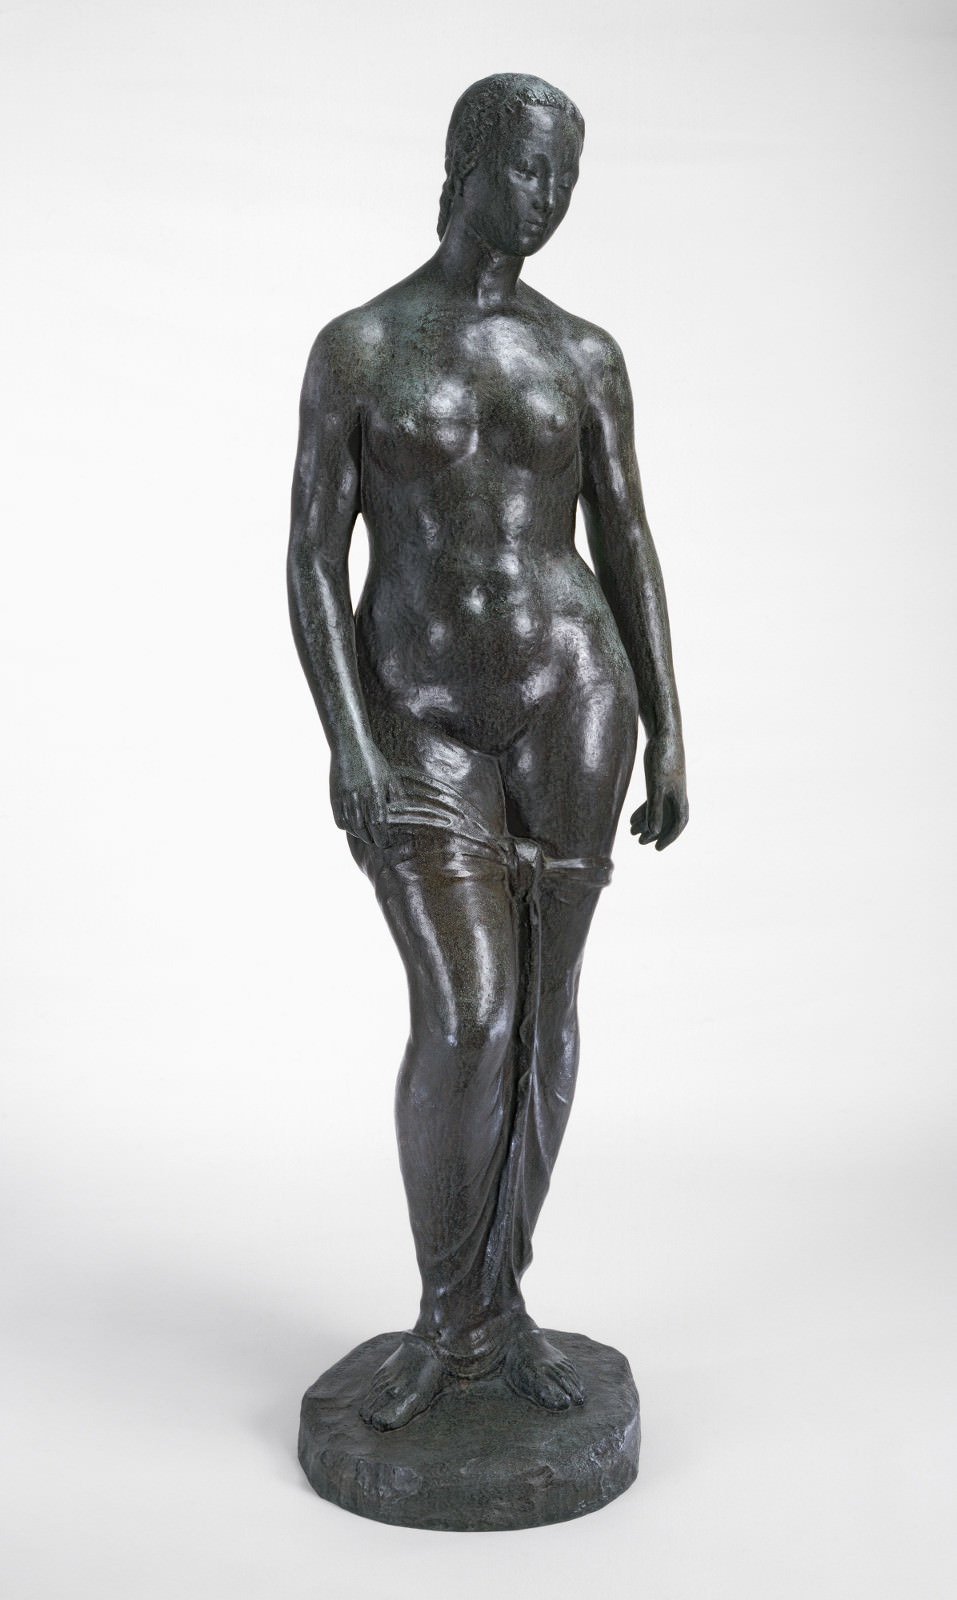 Инжир. 3 - Man Standing, Лембрук, 1910, Бронза, 191.2 x 54 X 39.9 см. Национальная галерея искусств, Вашингтон. Эйлса Брюс Фонд Меллона.